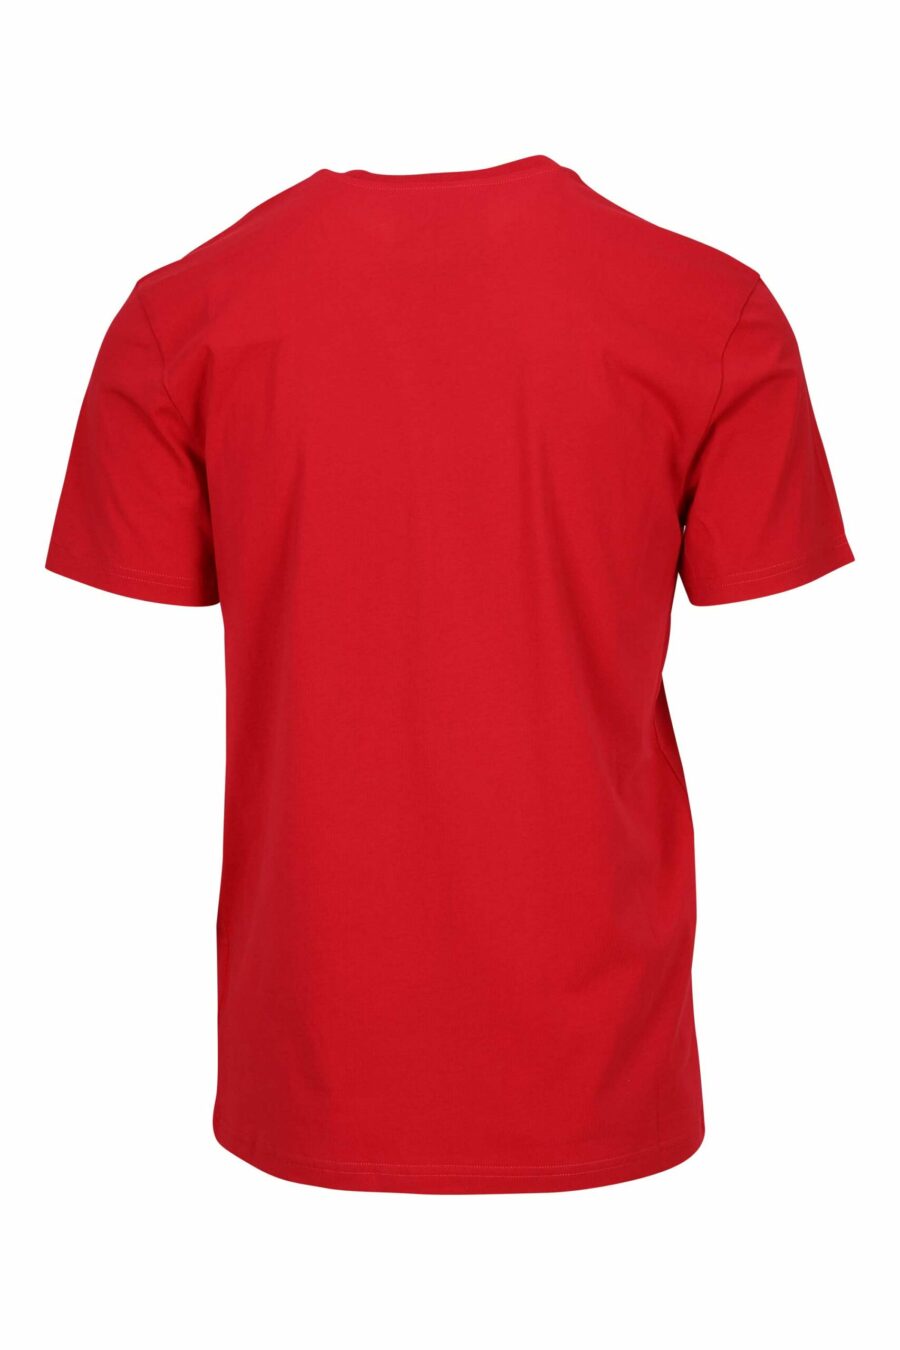 Oversize T-Shirt aus roter Bio-Baumwolle mit klassischem schwarzem Maxilogo - 667113751856 1 skaliert